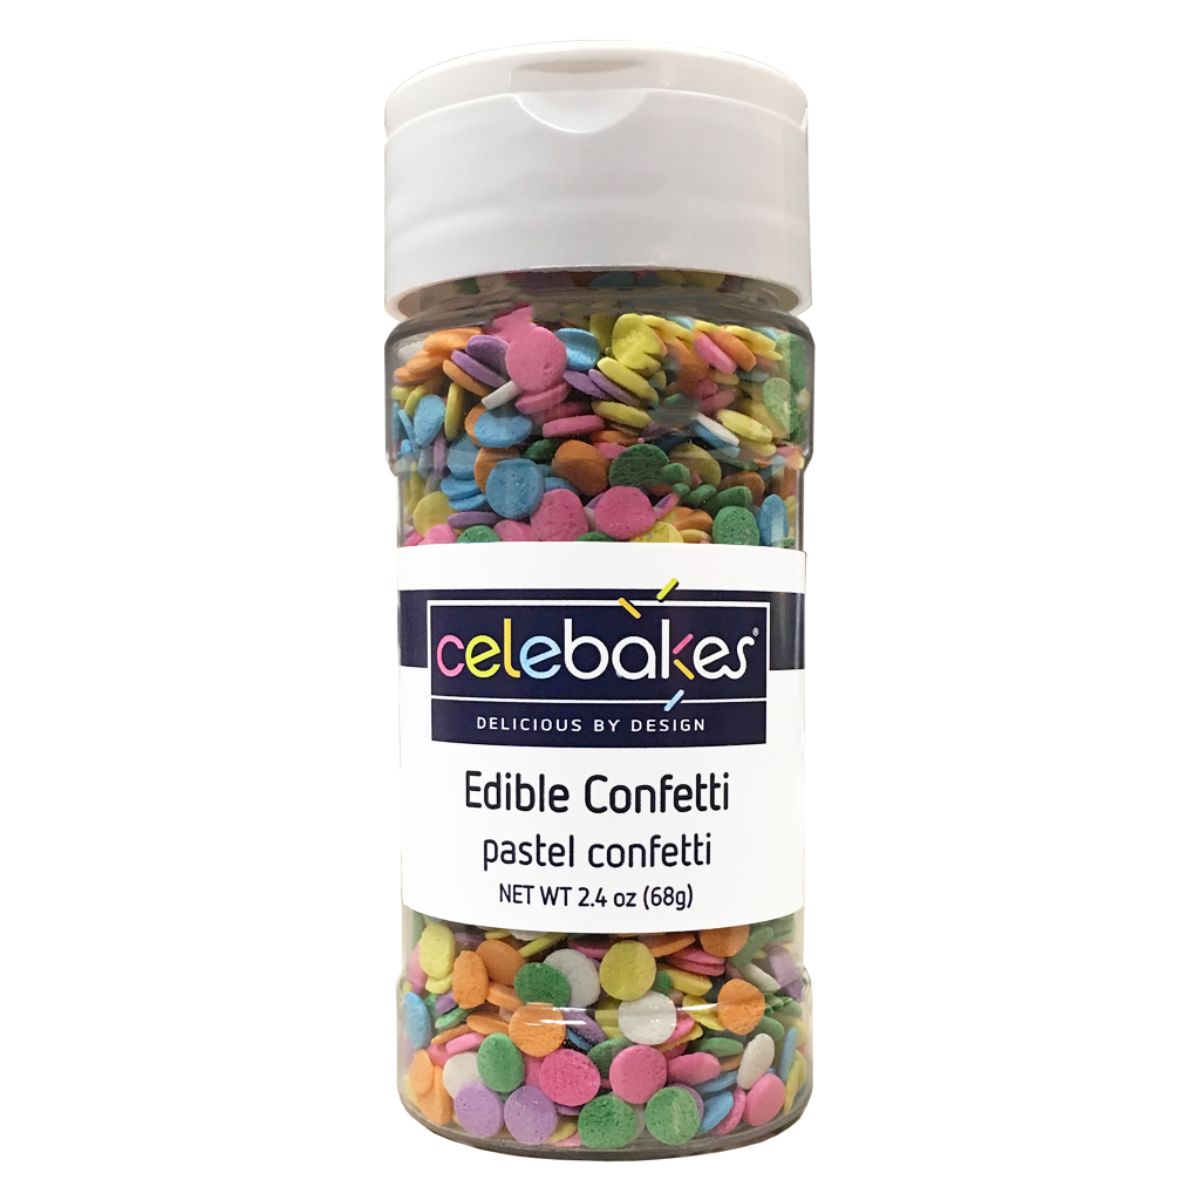 CK Edible Confetti Pastel Confetti 2.4oz